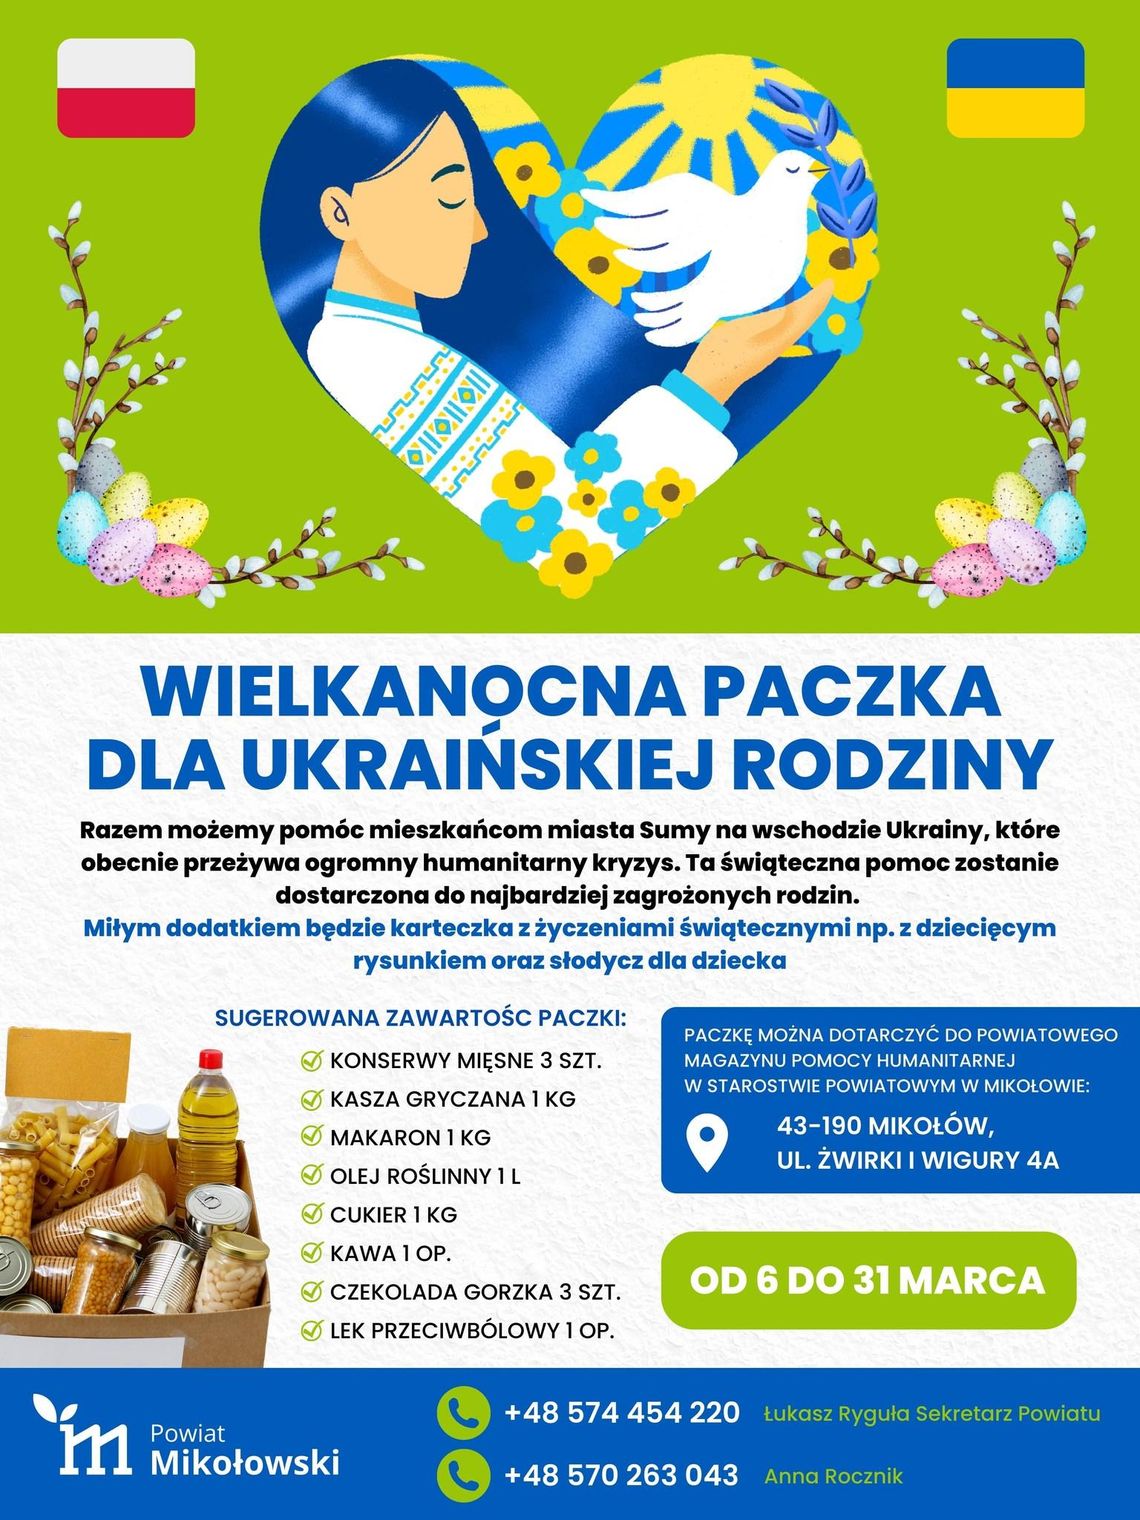 Wielkanocna pomoc dla ukraińskich rodzin